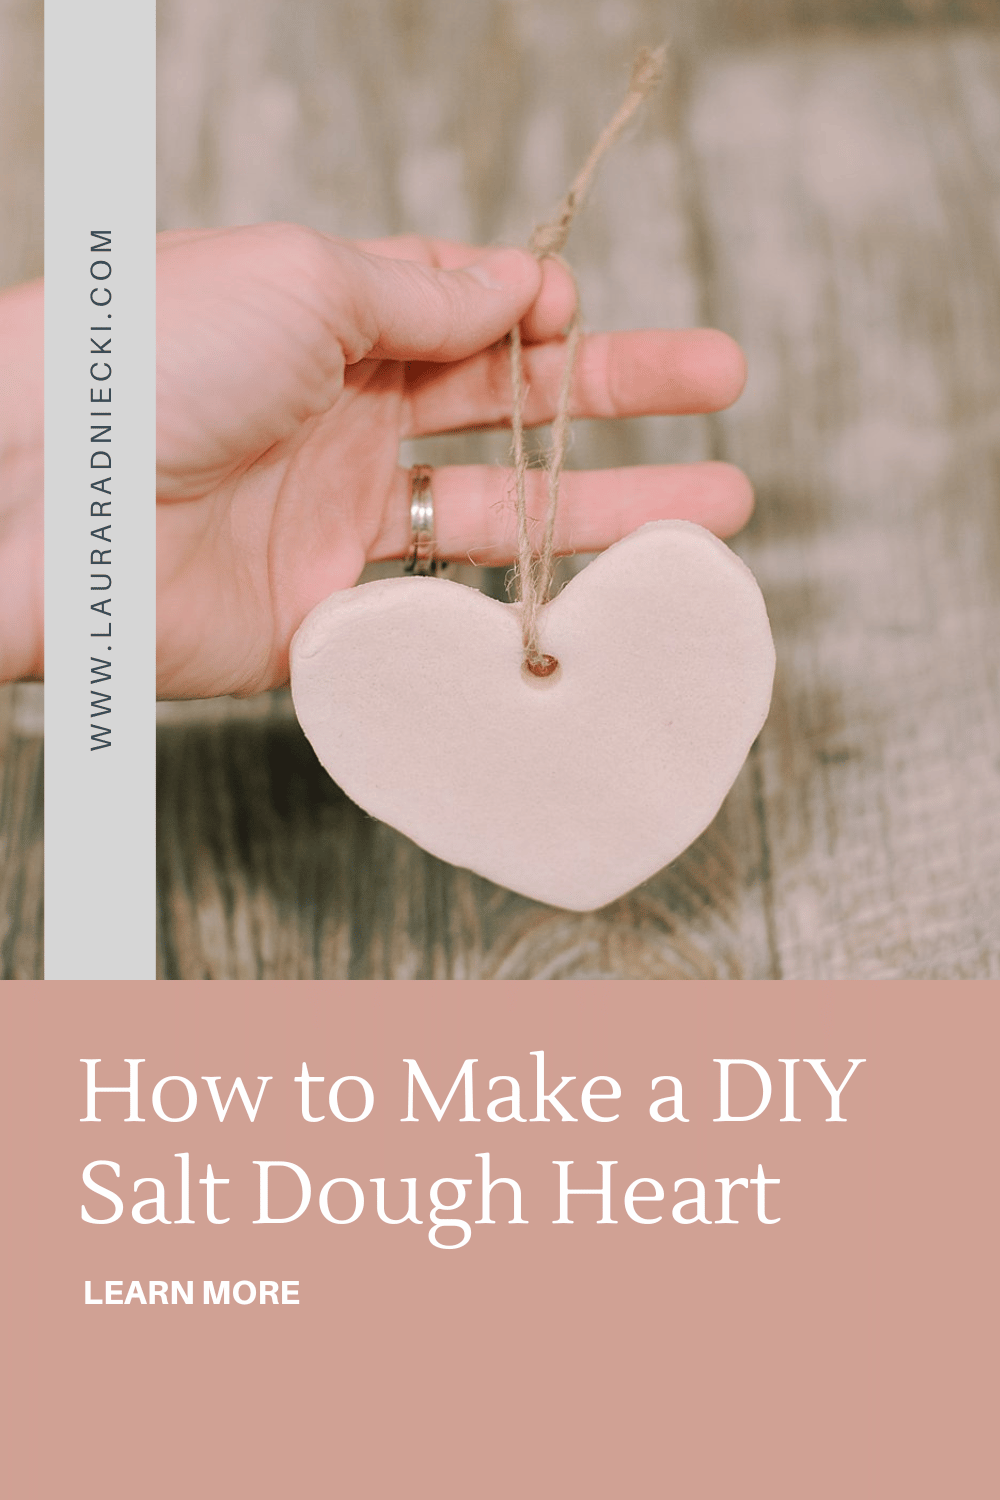 How to Make a Salt Dough Heart